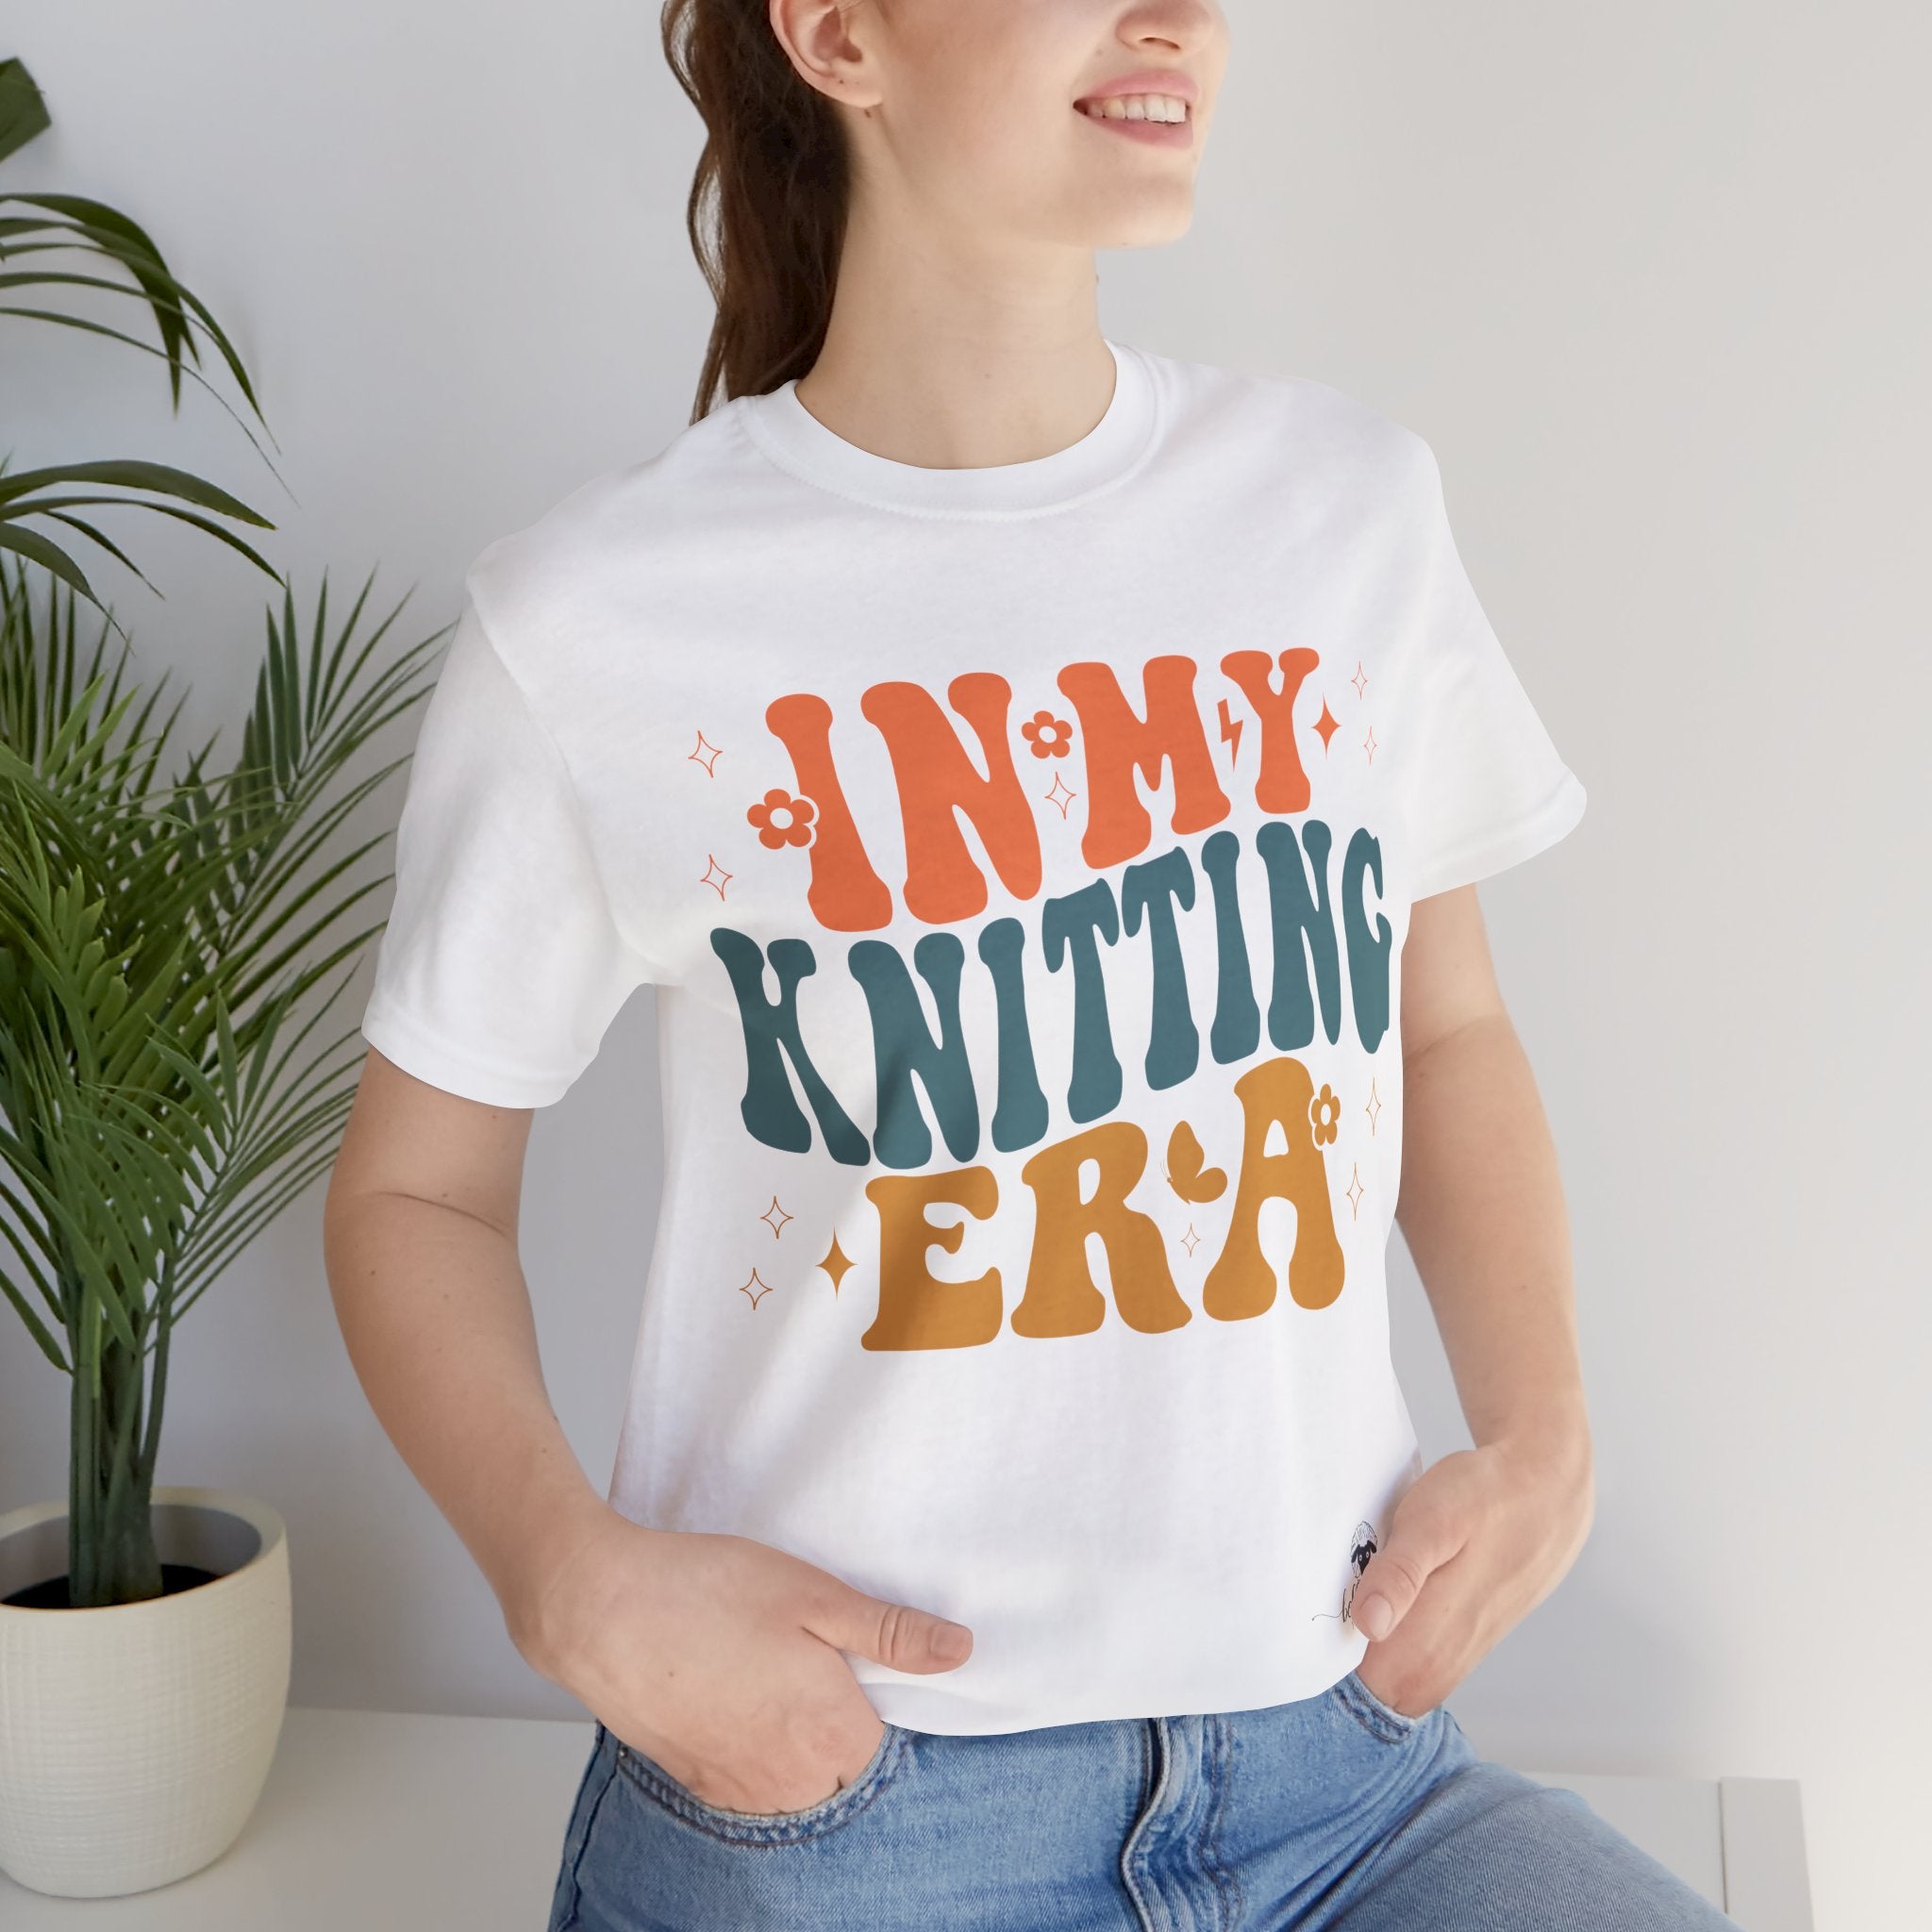 Knitting Era - Unisex Tee